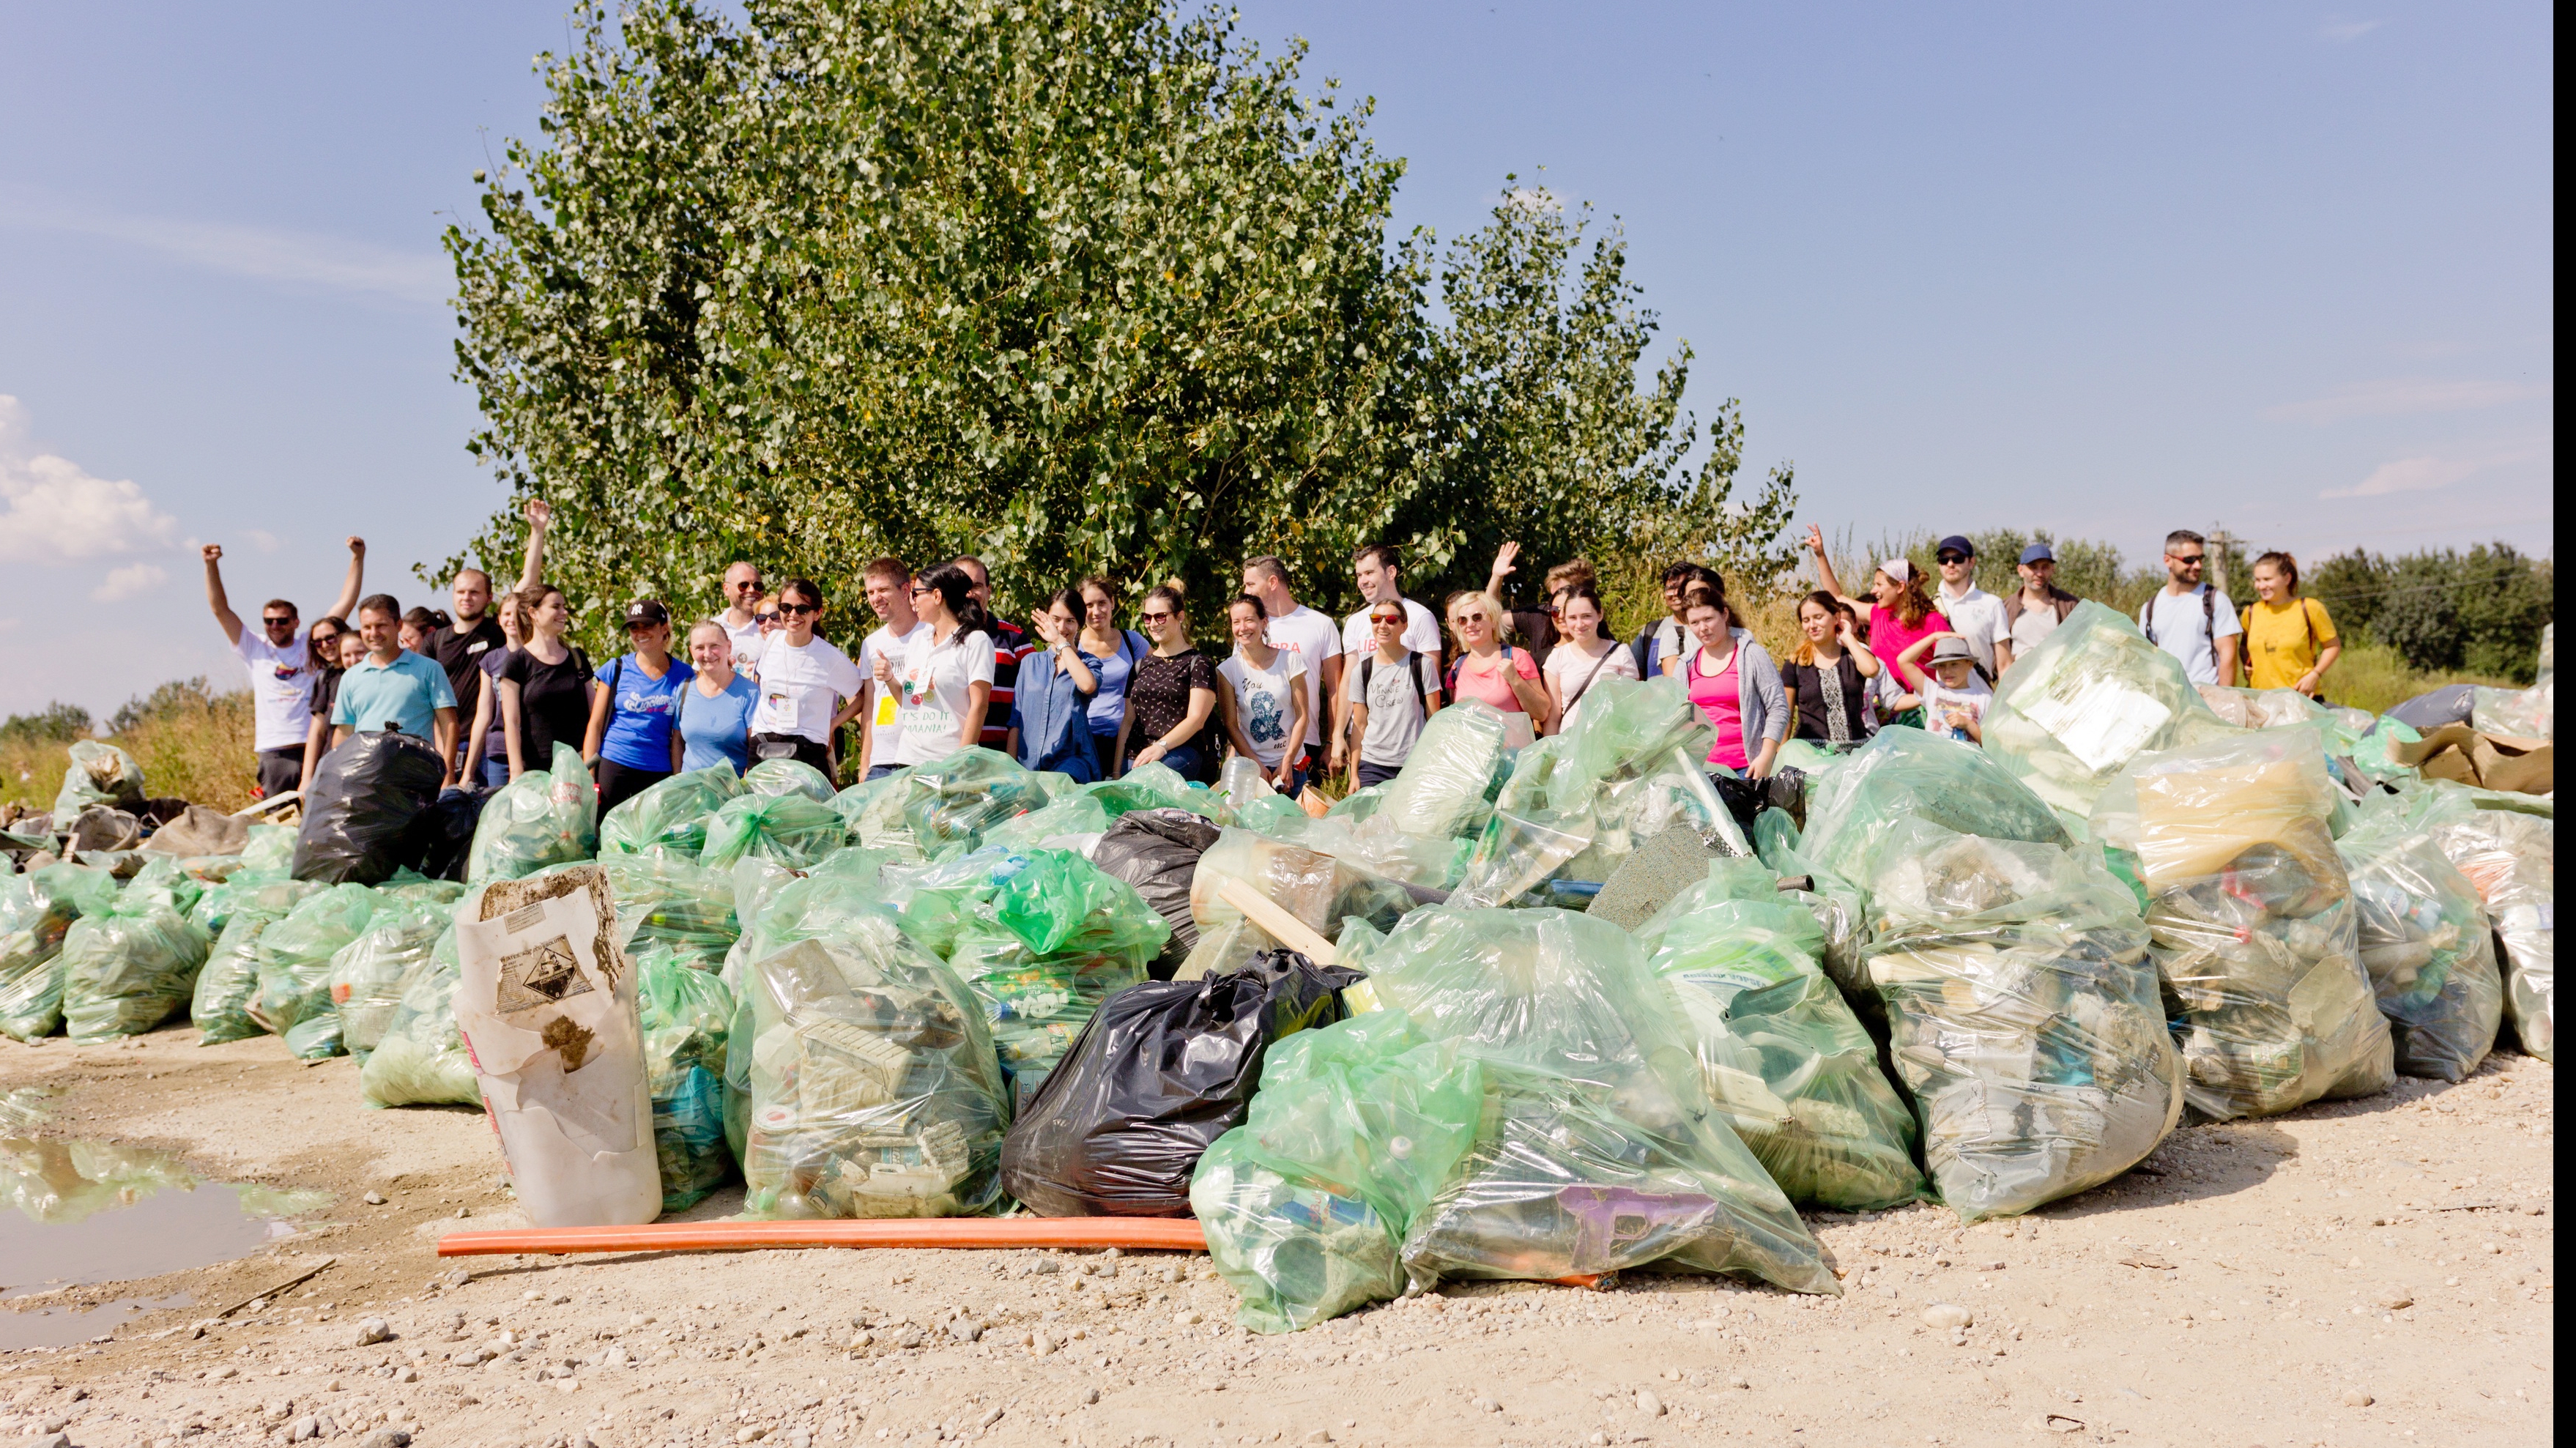 365 212 de voluntari au curățat 500 815 saci cu deșeuri în România